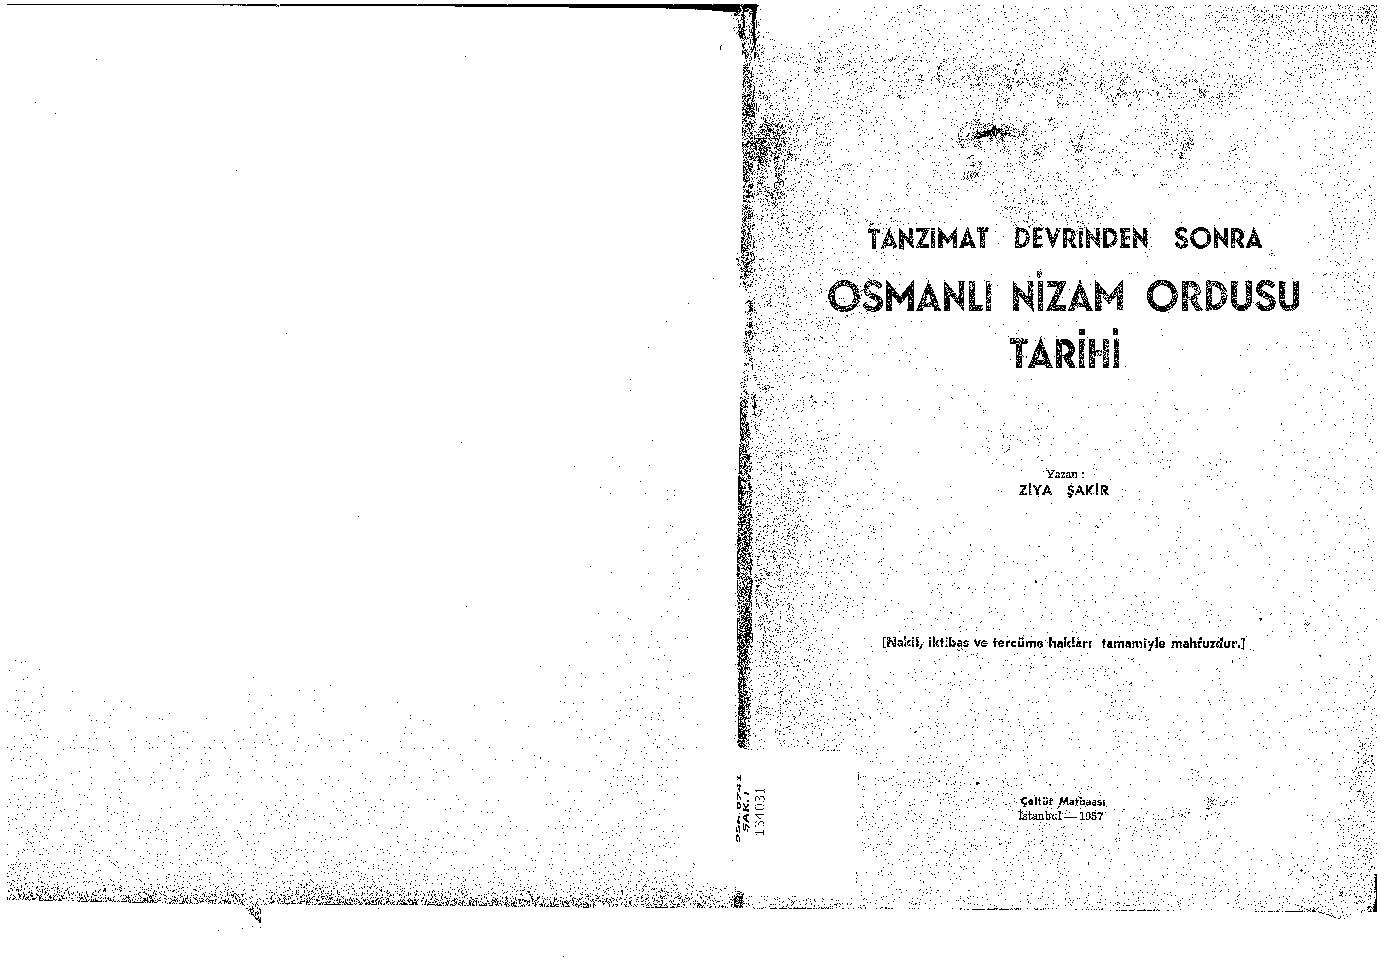 Osman Nizam Ordusu Tarixi-Ziya Şakir-1957-66s